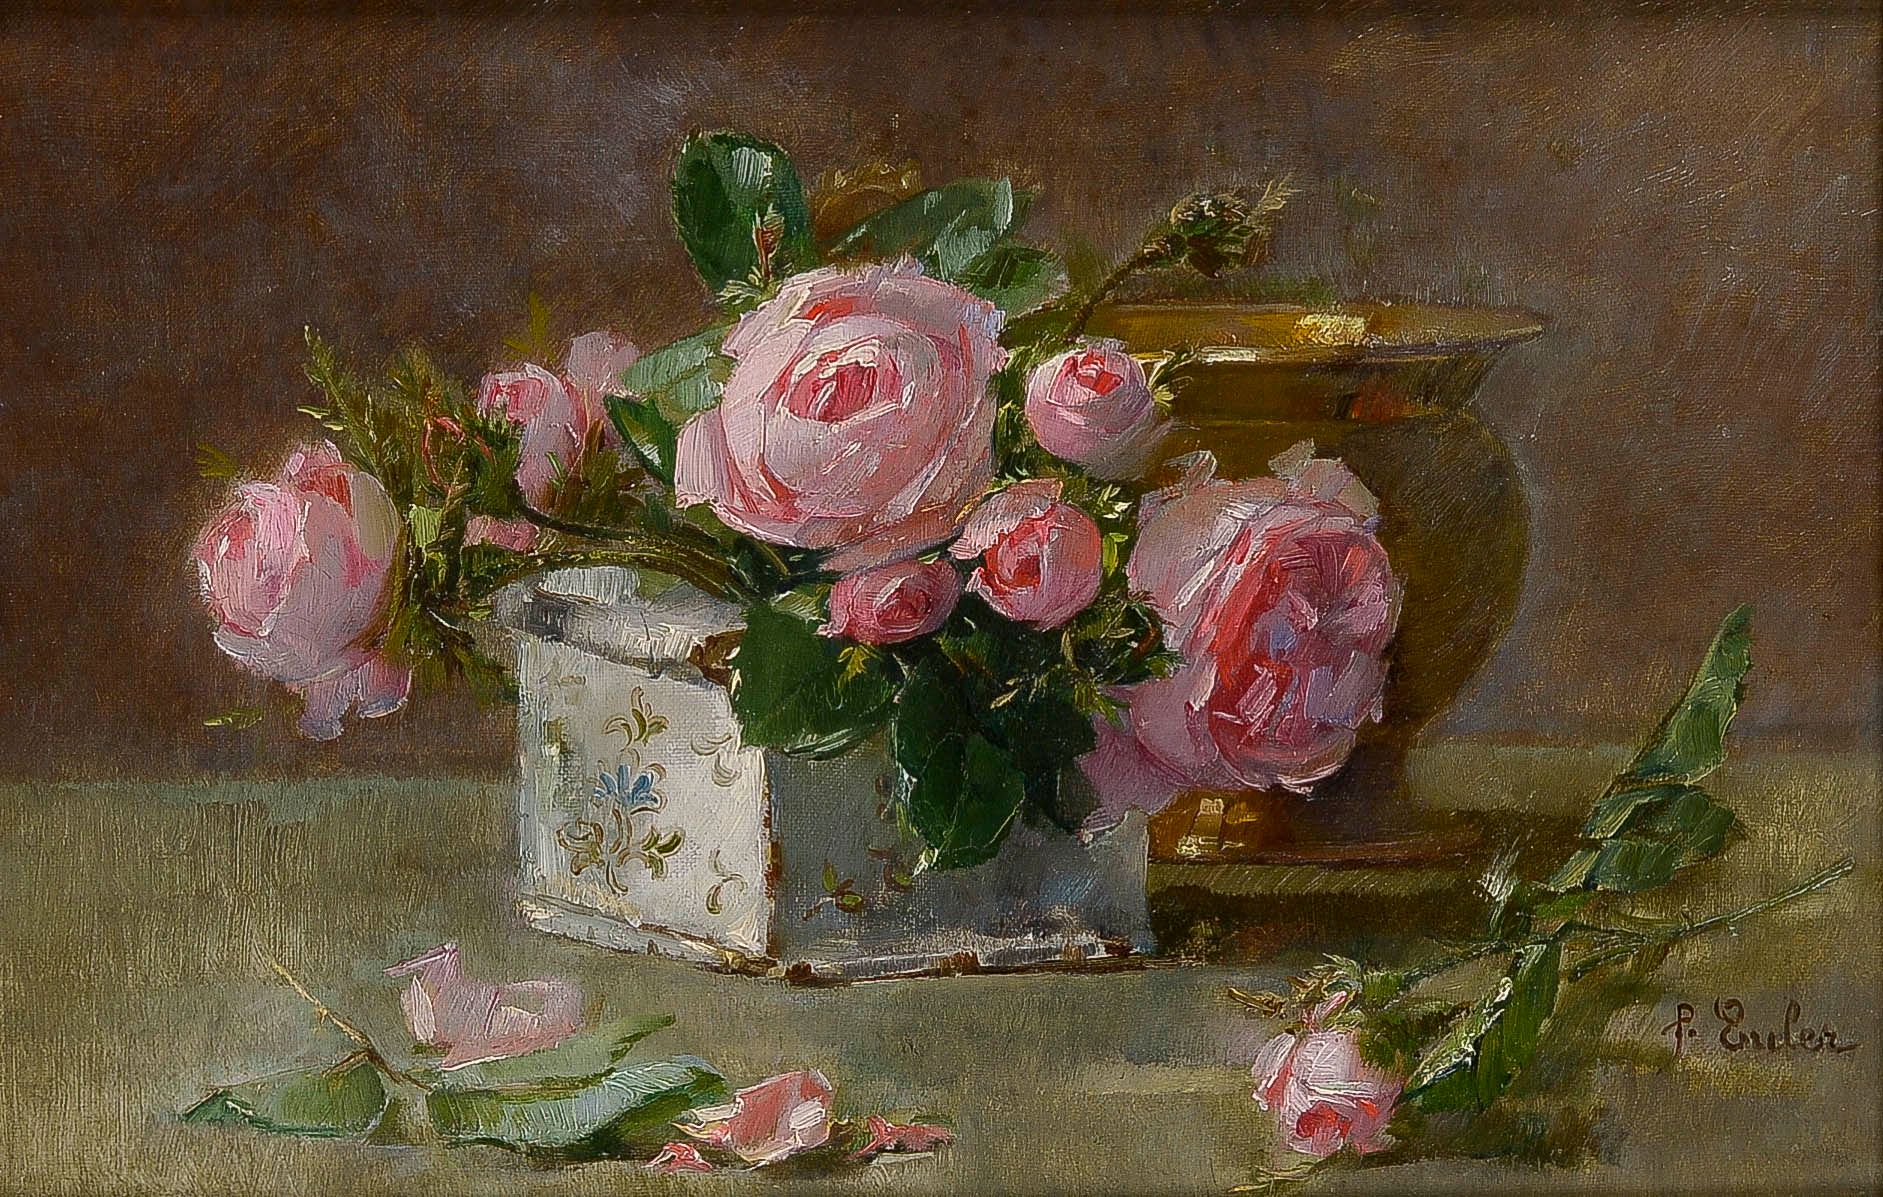 Null 皮埃尔-尤勒(Pierre EULER) (1846-1915)

玫瑰花束

布面油画，右下角有签名

27 x 41厘米